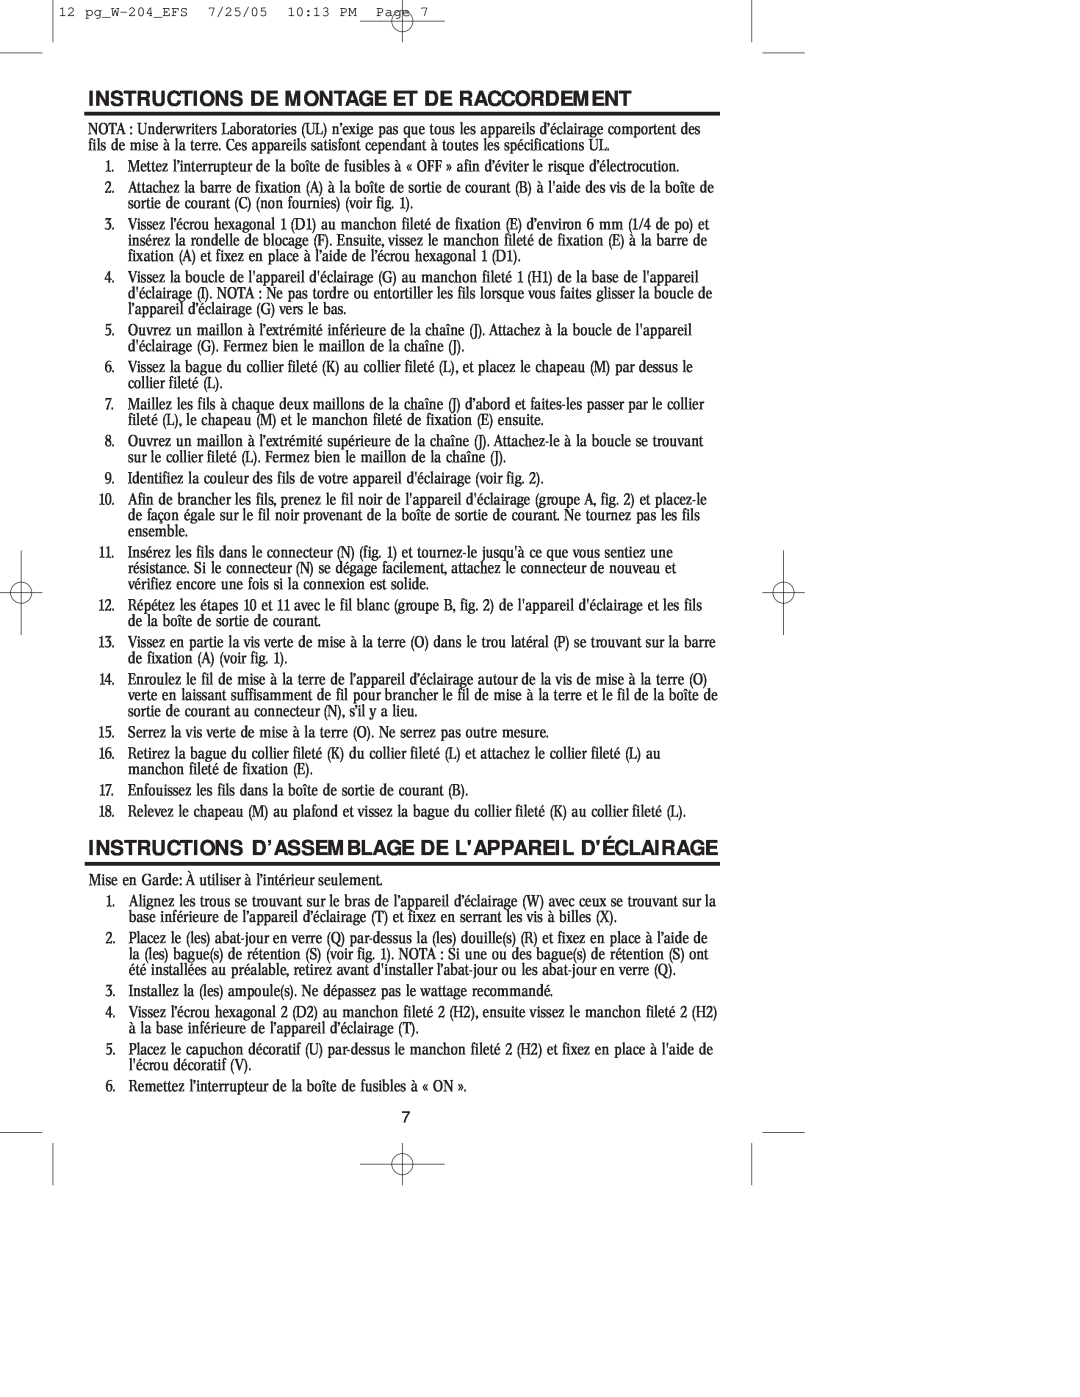 Westinghouse W-204 Instructions De Montage Et De Raccordement, Instructions D’Assemblage De Lappareil Déclairage 